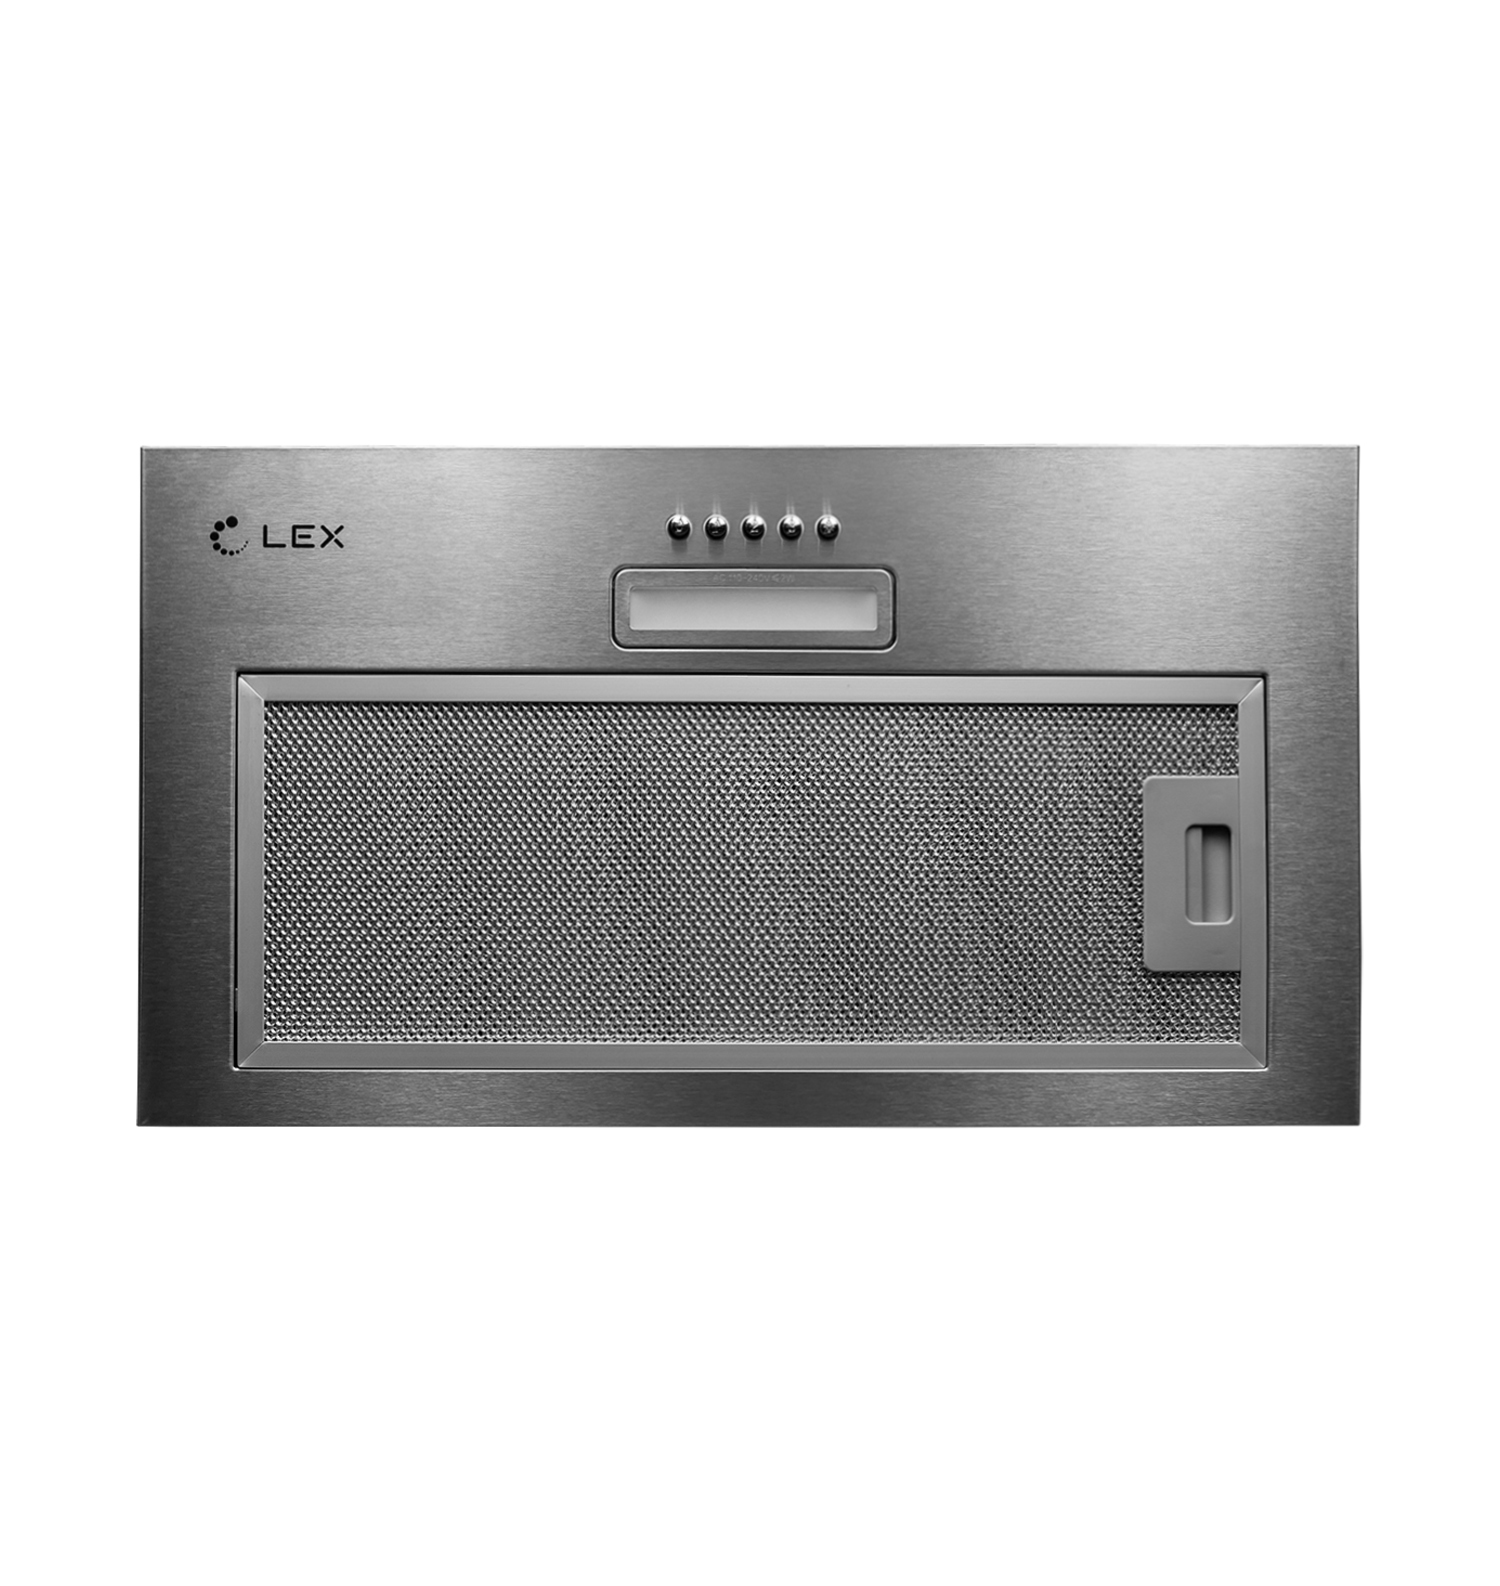 Кухонная вытяжка встраиваемая Lex GS Bloc Light 60 см серая (CHTI000328) встраиваемая вытяжка lex gs bloc light 600 inox